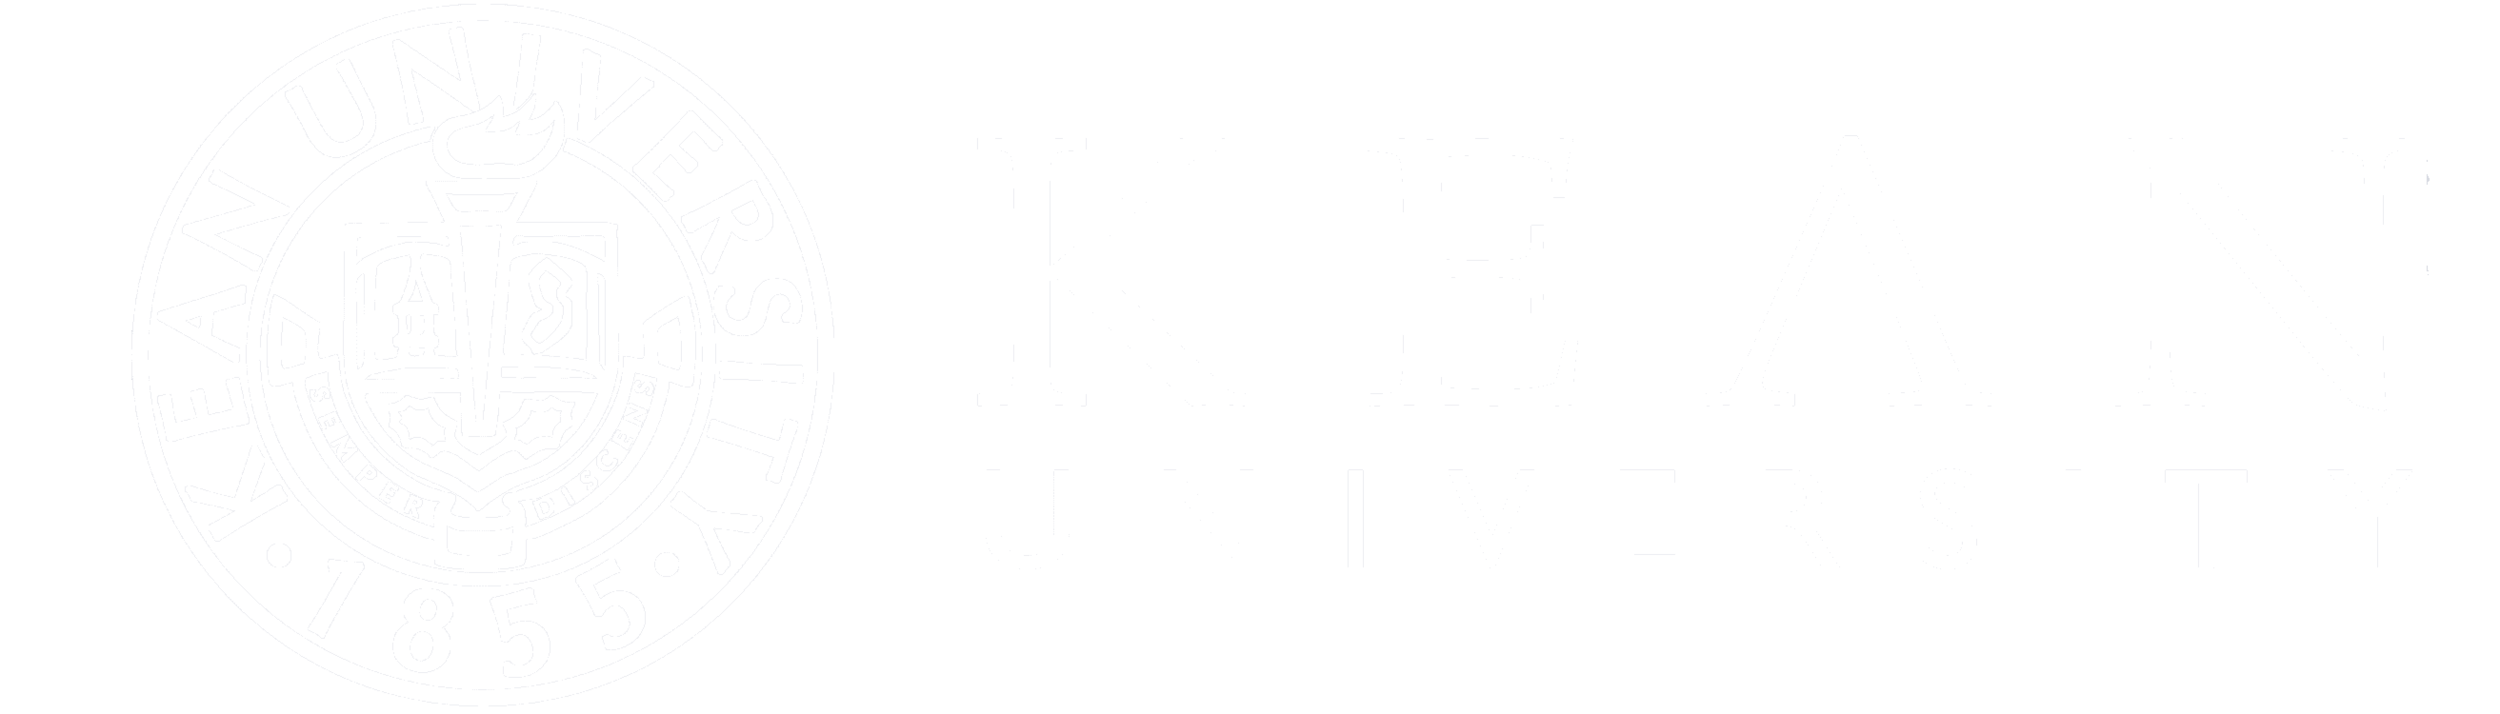 Kean_Logo.png